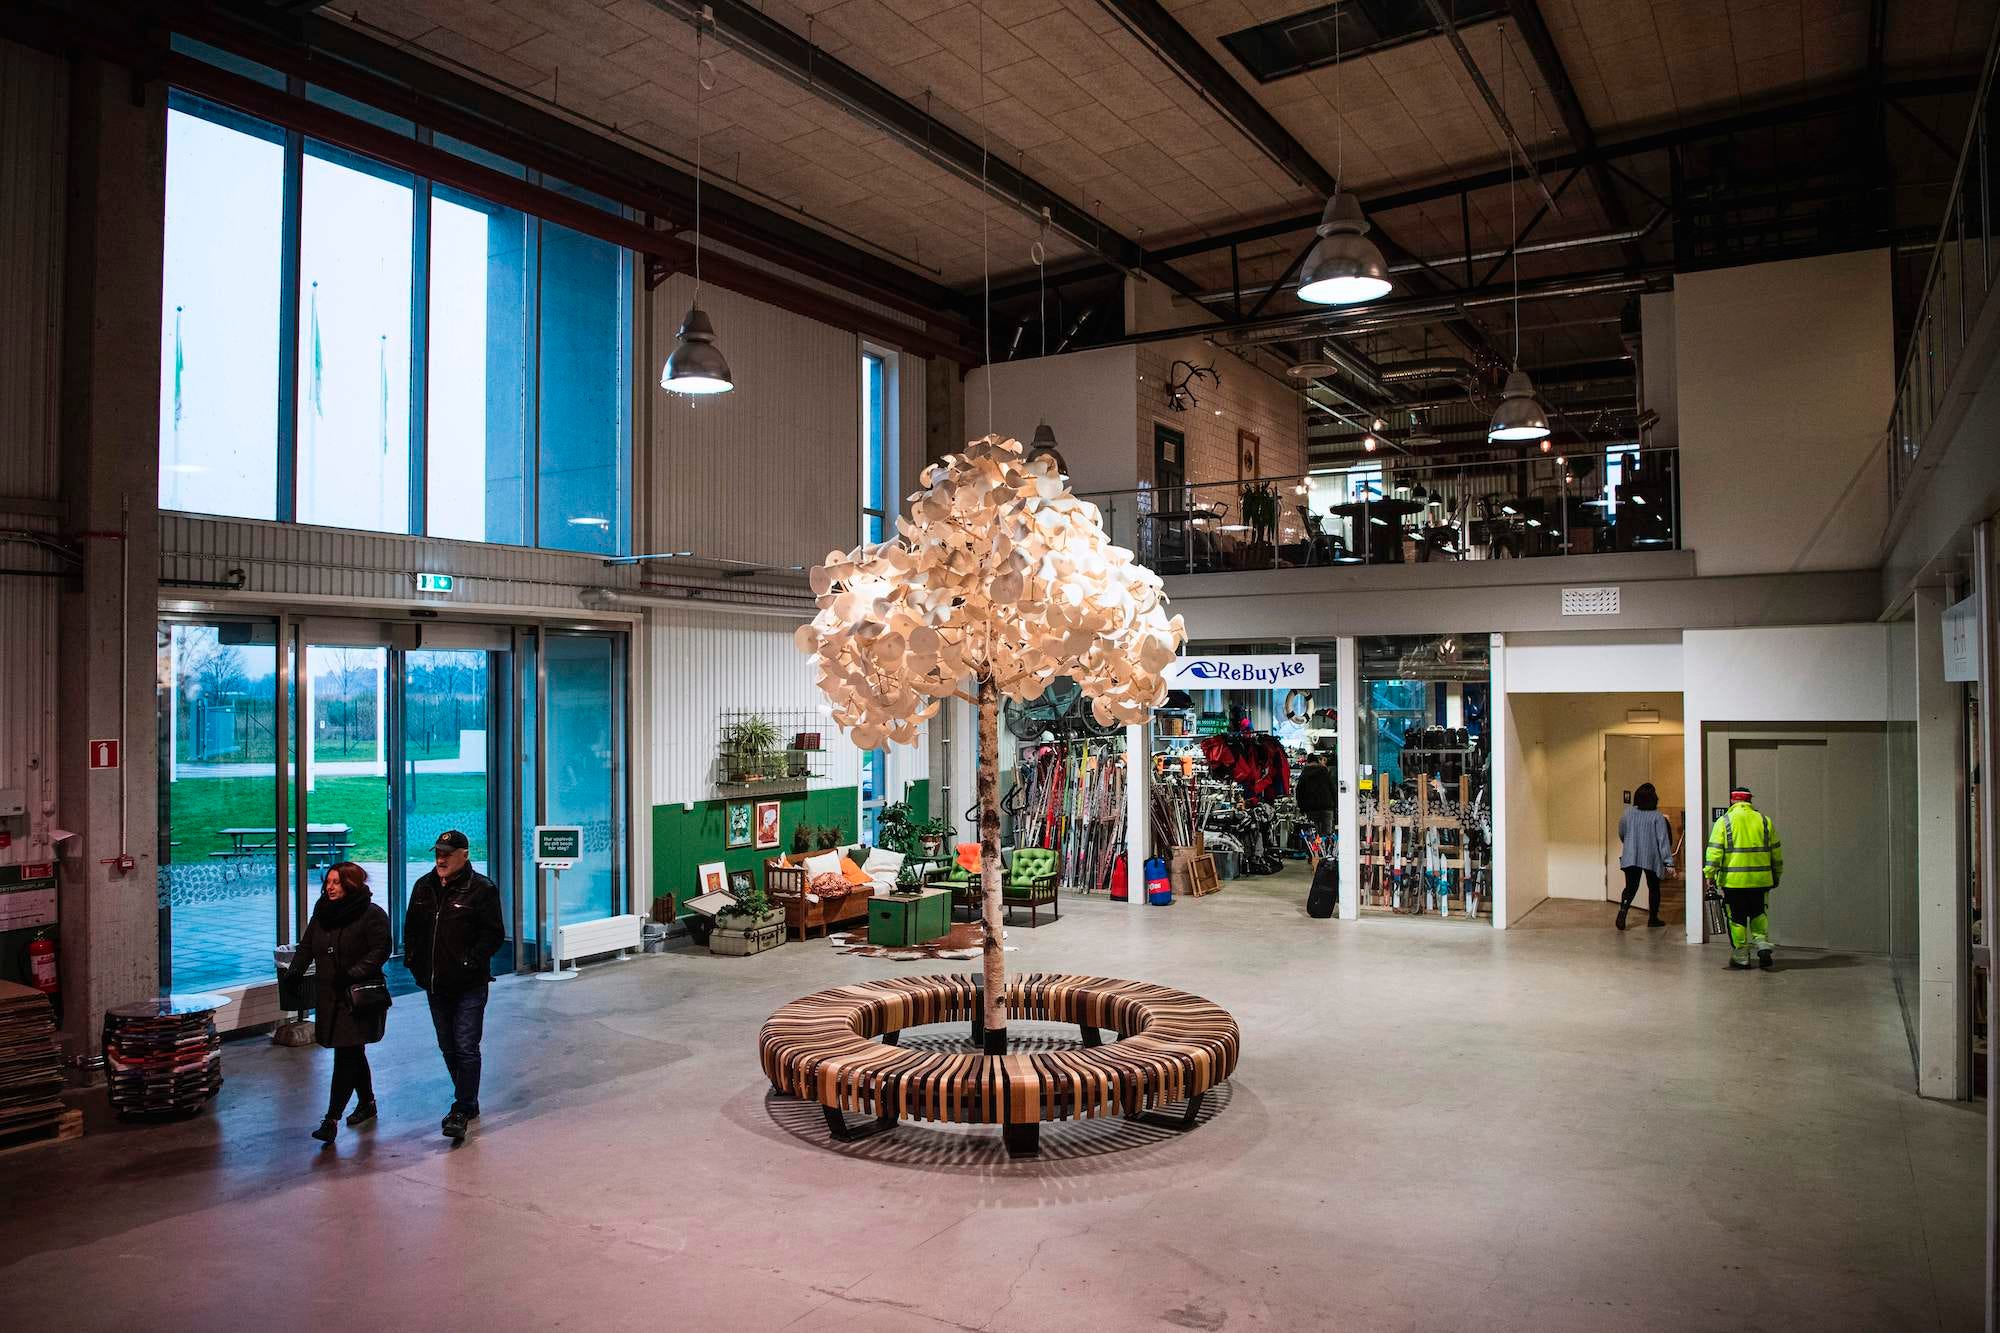 Een kijkje in de ReTuna Mall in Zweden, het eerste winkelcentrum met alleen gerecyclede spullen. Foto: Getty Images